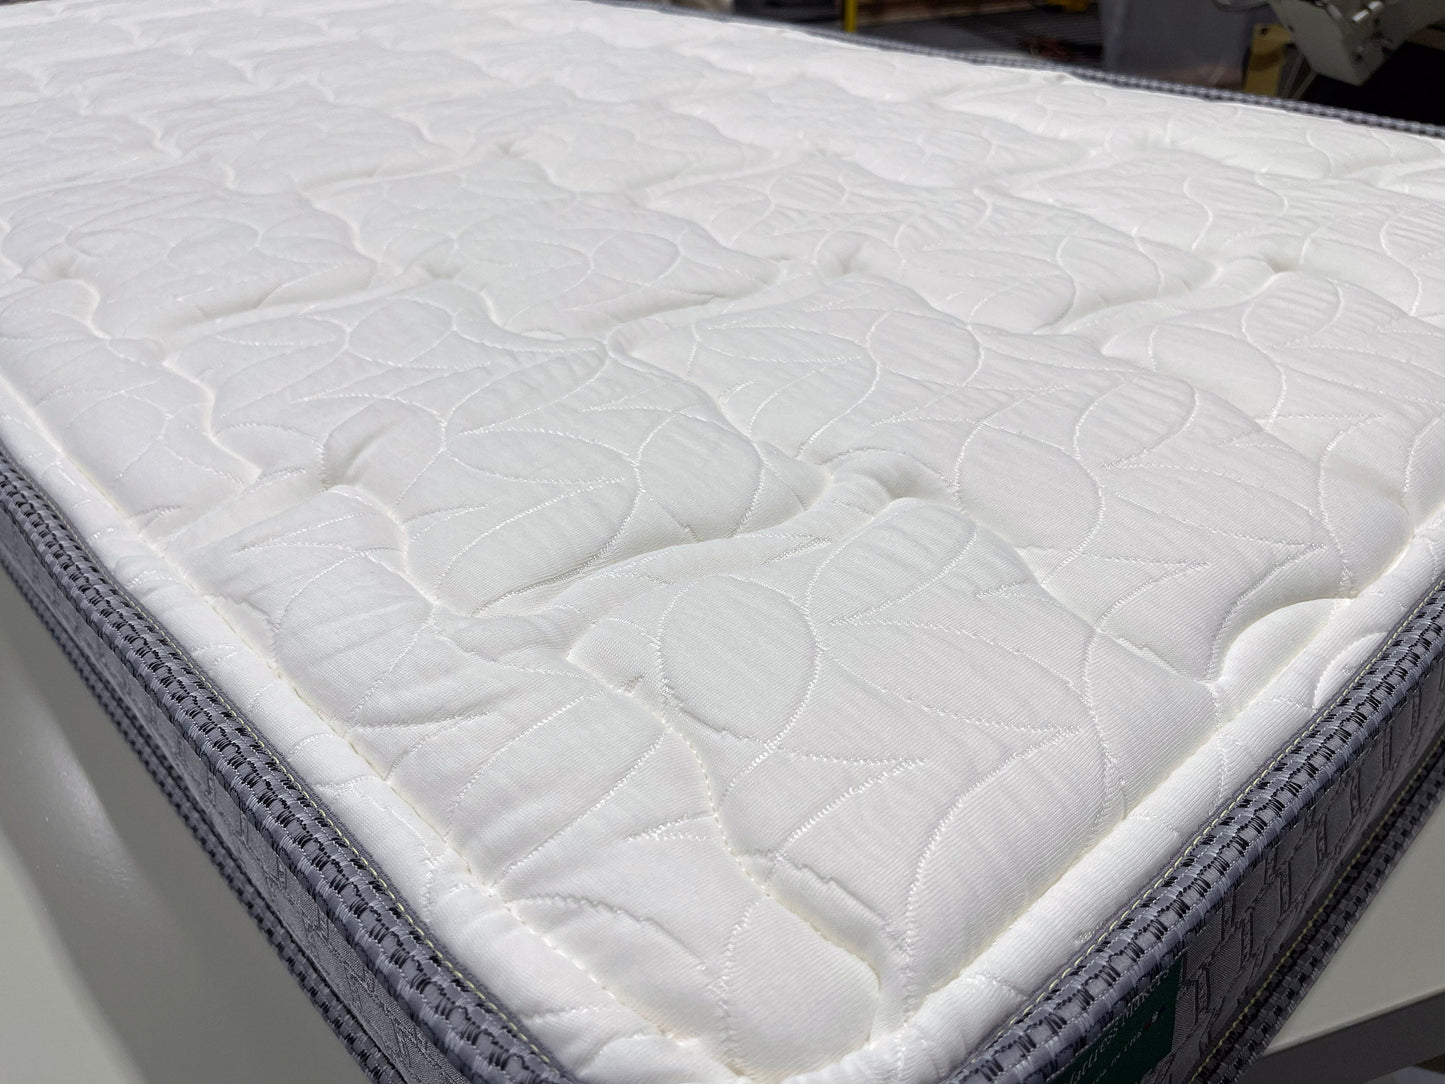 Cape - 30" x 56.5" mattress